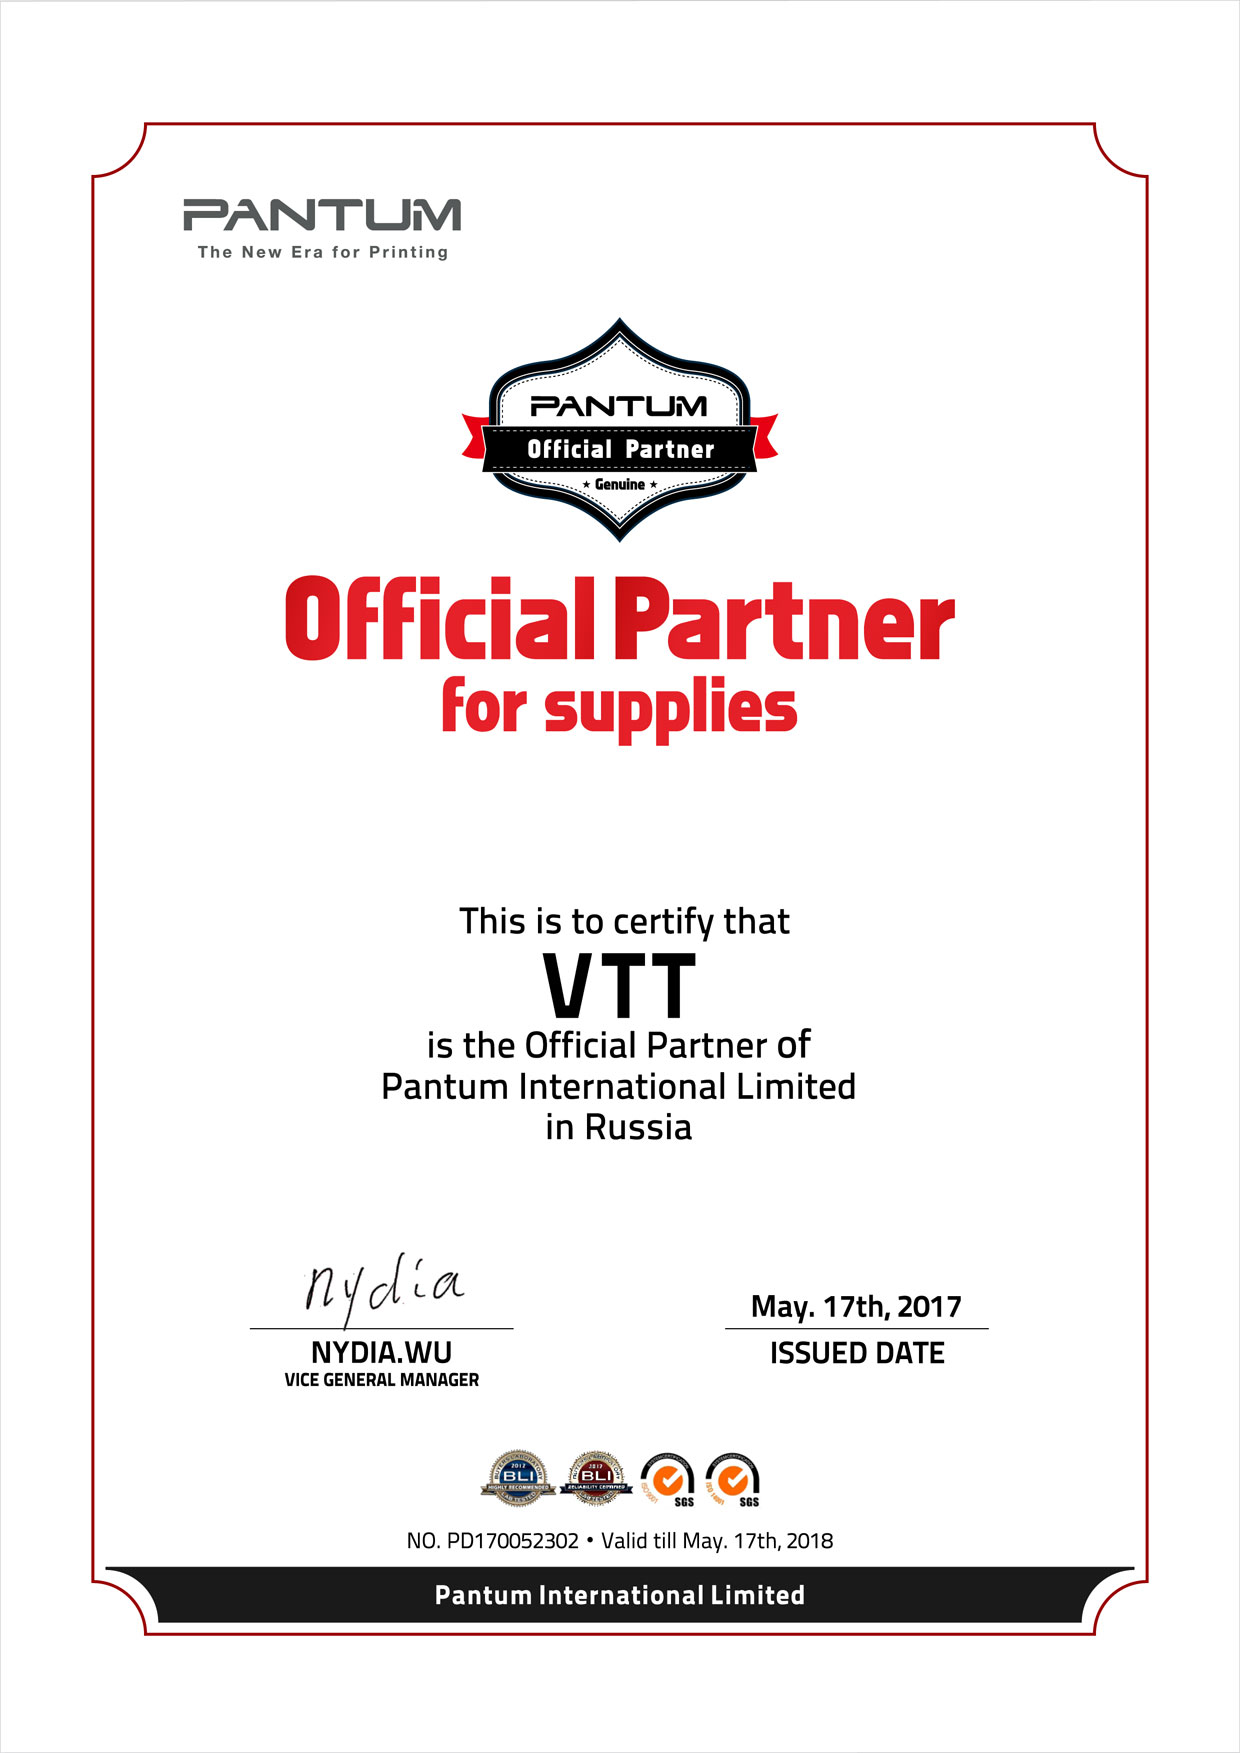 Official-Partner-Certificate-Pantum-to-VTT---Russia.jpg